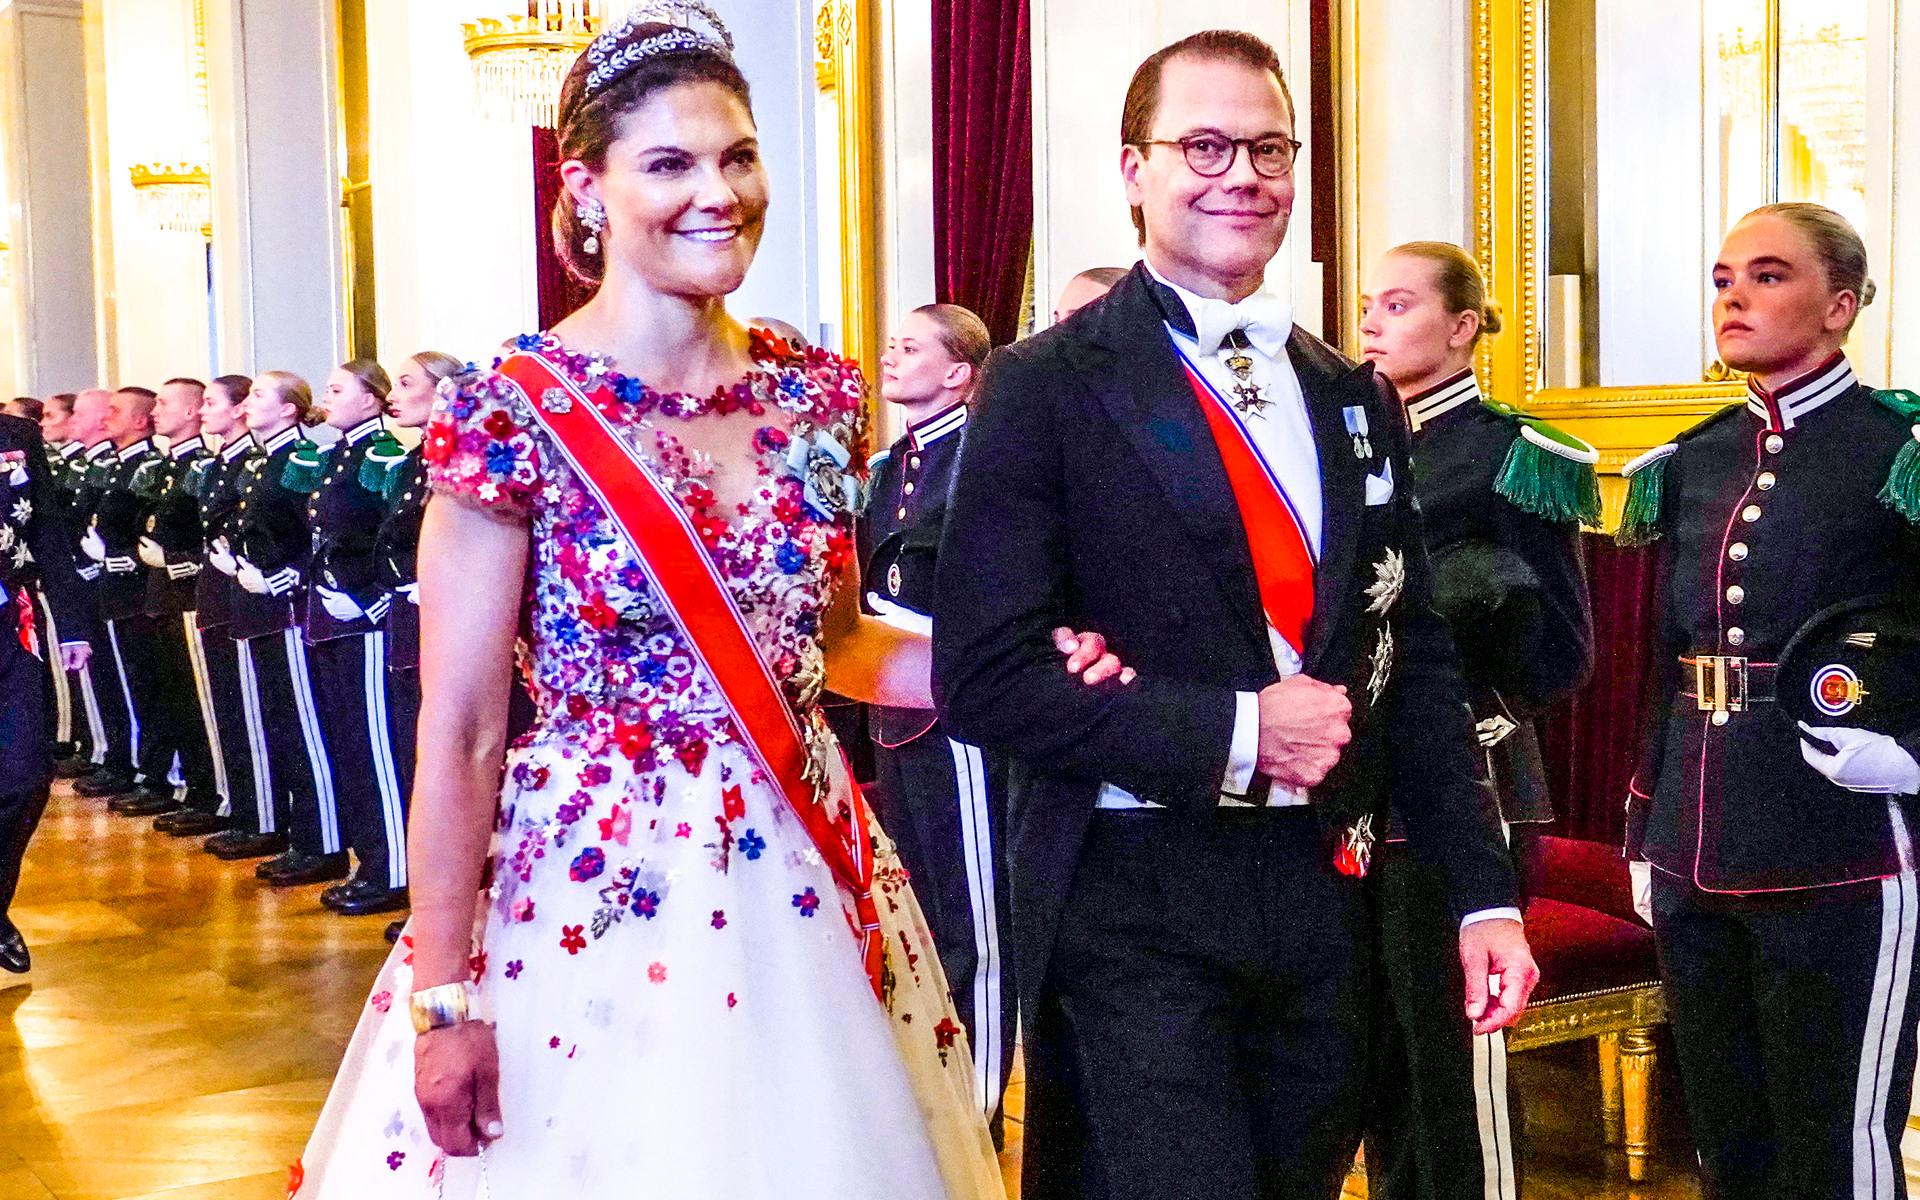 I mitten av juni var kronprinsessan Victoria och prins Daniel i Oslo för att fira prinsessan Ingrid Alexandra som fyllt 18 år. Kronprinsessan bar en klänning designad av Frida Jonsvens, och som gick mest i blått, vitt och rött, samma färger som i den norska flaggan.